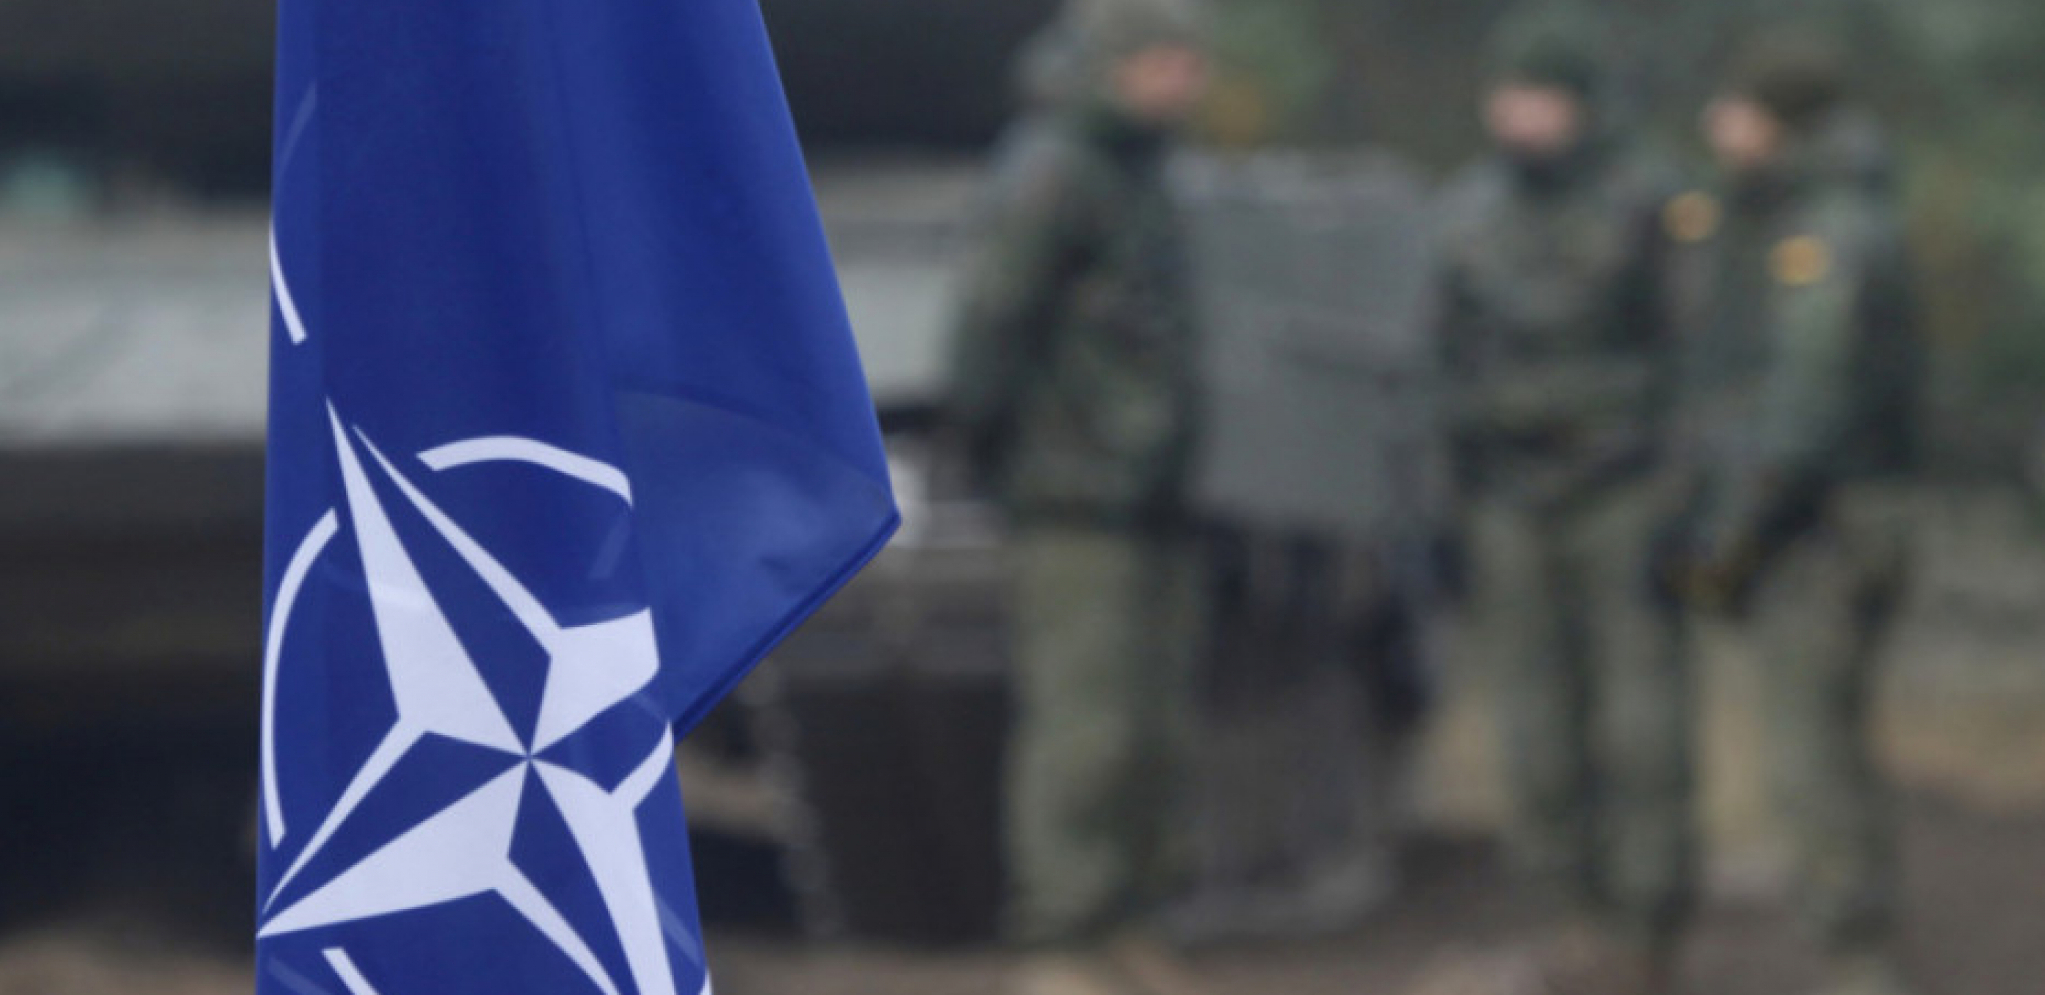 UPOZORENJE IZ MOSKVE: "NATO ih transformiše, prave baze tamo!"